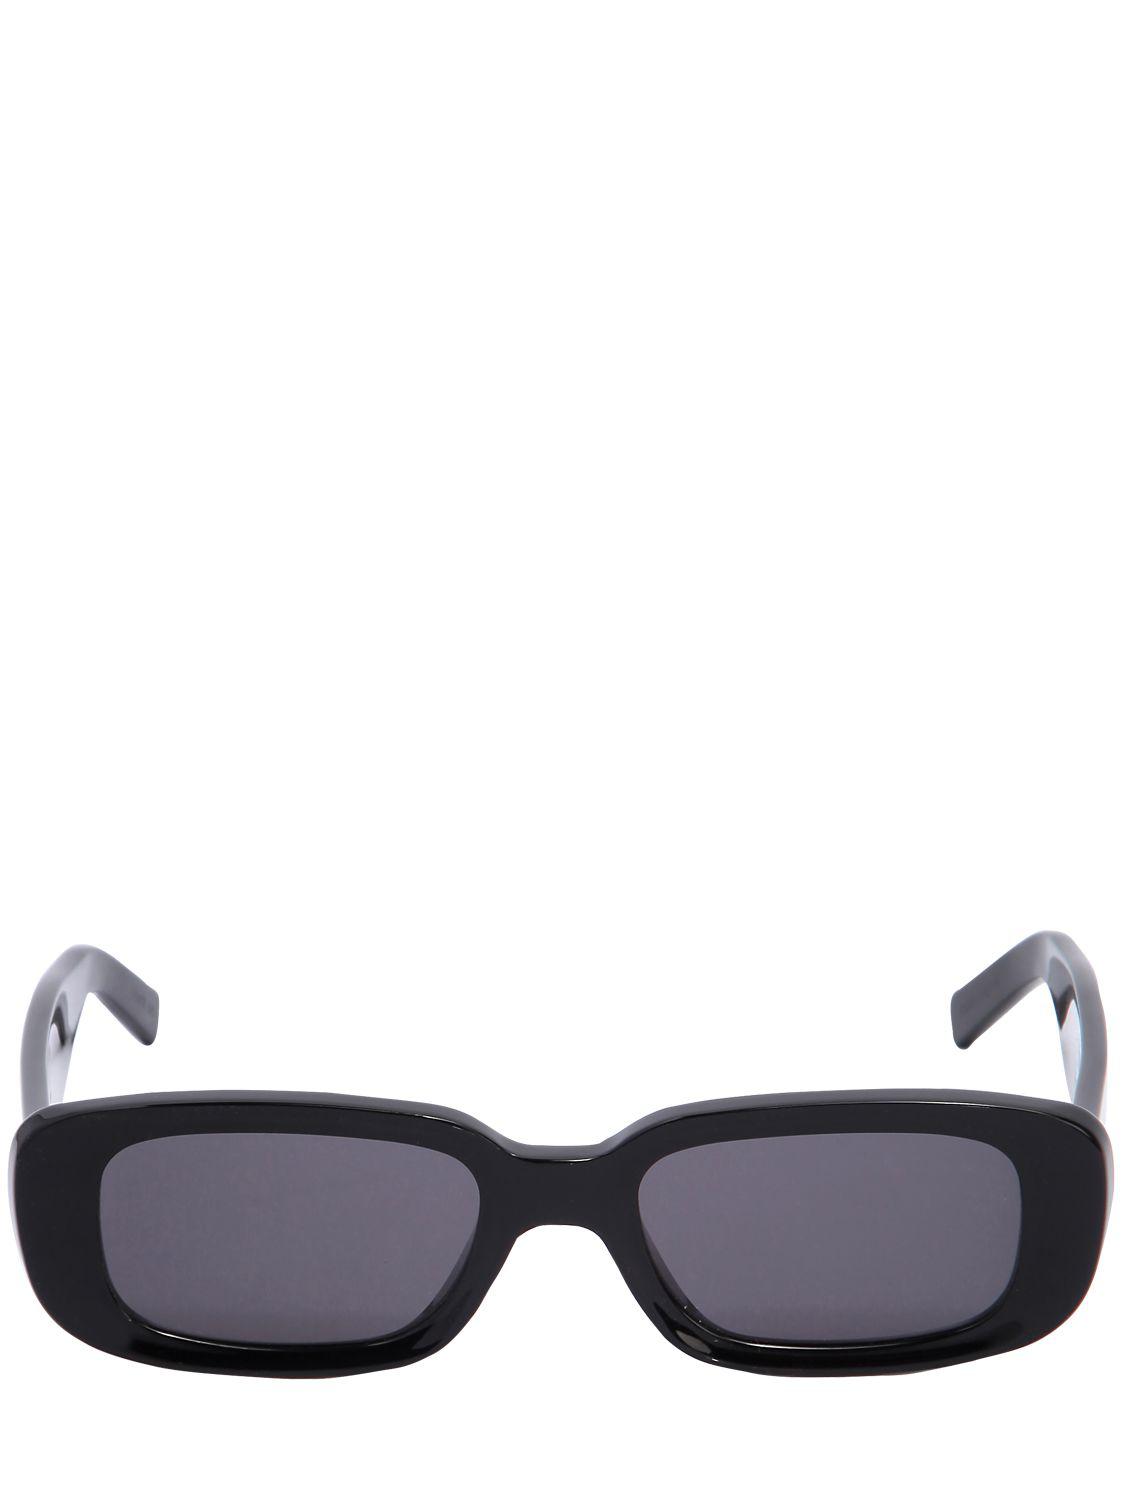 Off-White c/o Virgil Abloh Rectangle Frame Acetate Sunglasses in Black ...